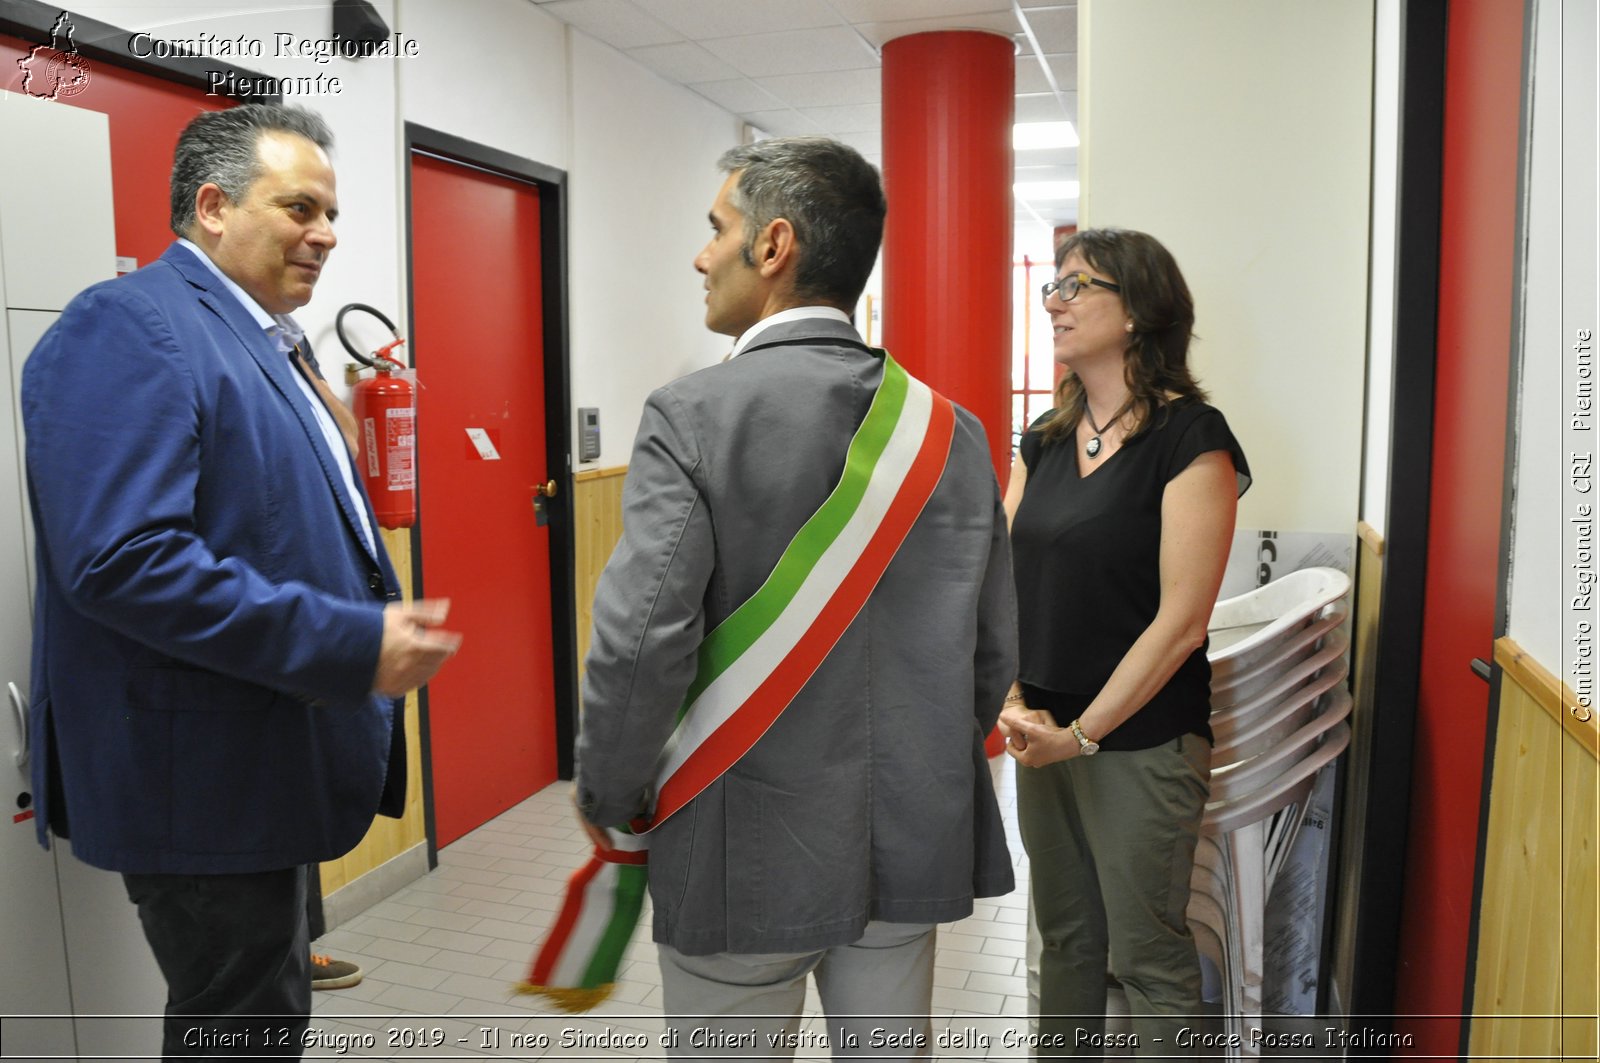 Chieri 12 Giugno 2019 - Il neo Sindaco di Chieri visita la Sede della Croce Rossa - Croce Rossa Italiana - Comitato Regionale del Piemonte